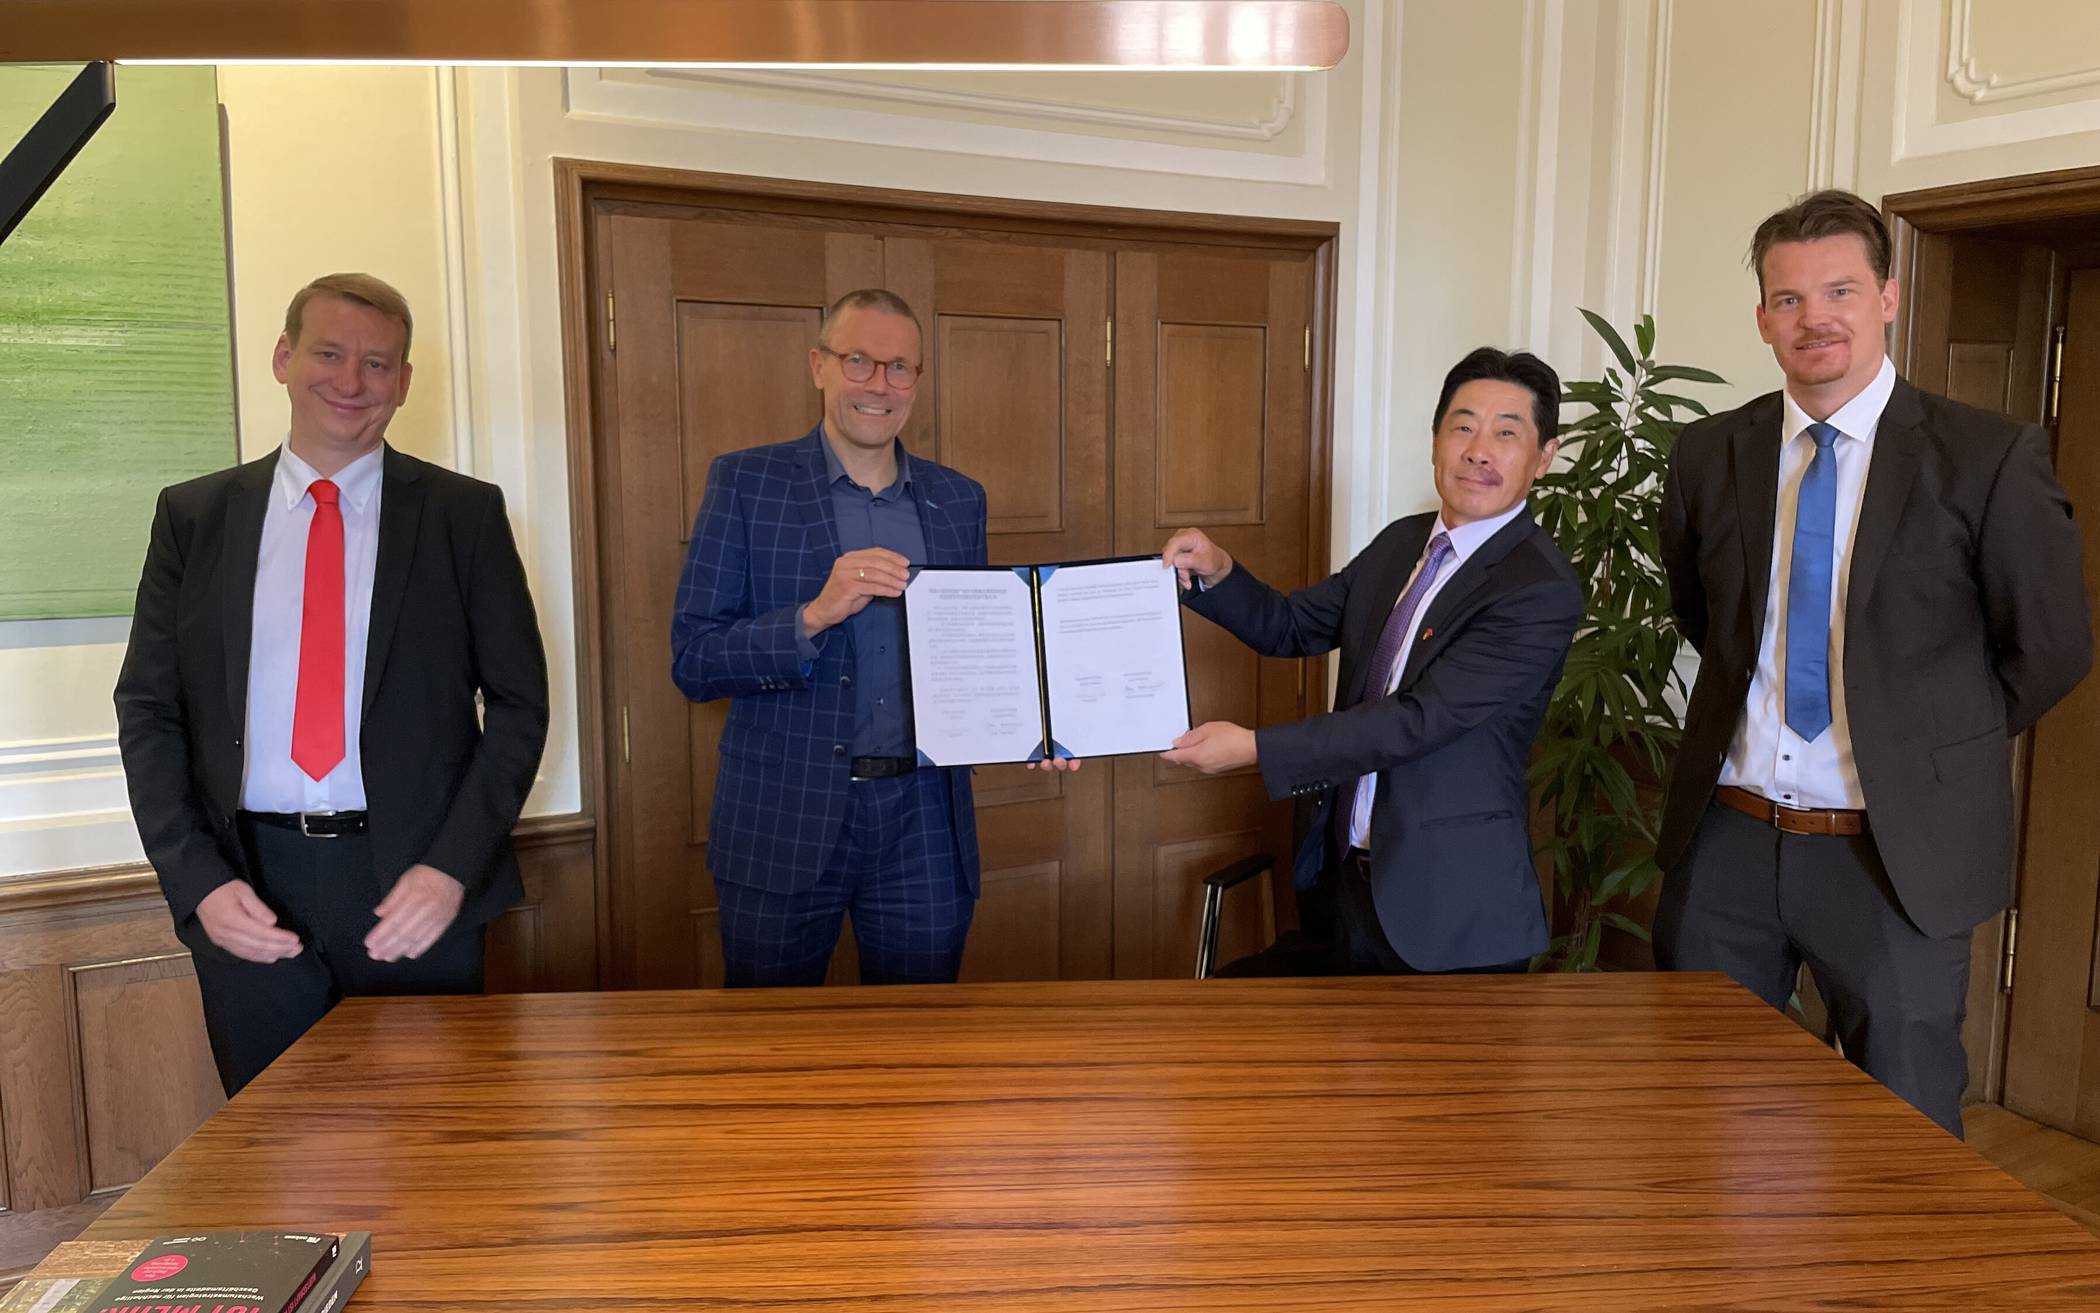  Von links: Christian Baierl, Oberbürgermeister Uwe Schneidewind, Tao Jiang und Hanno Rademacher  präsentieren das unterschriebene Abkommen zur zukünftigen Kooperation mit China bei Klimaschutz-Themen. 